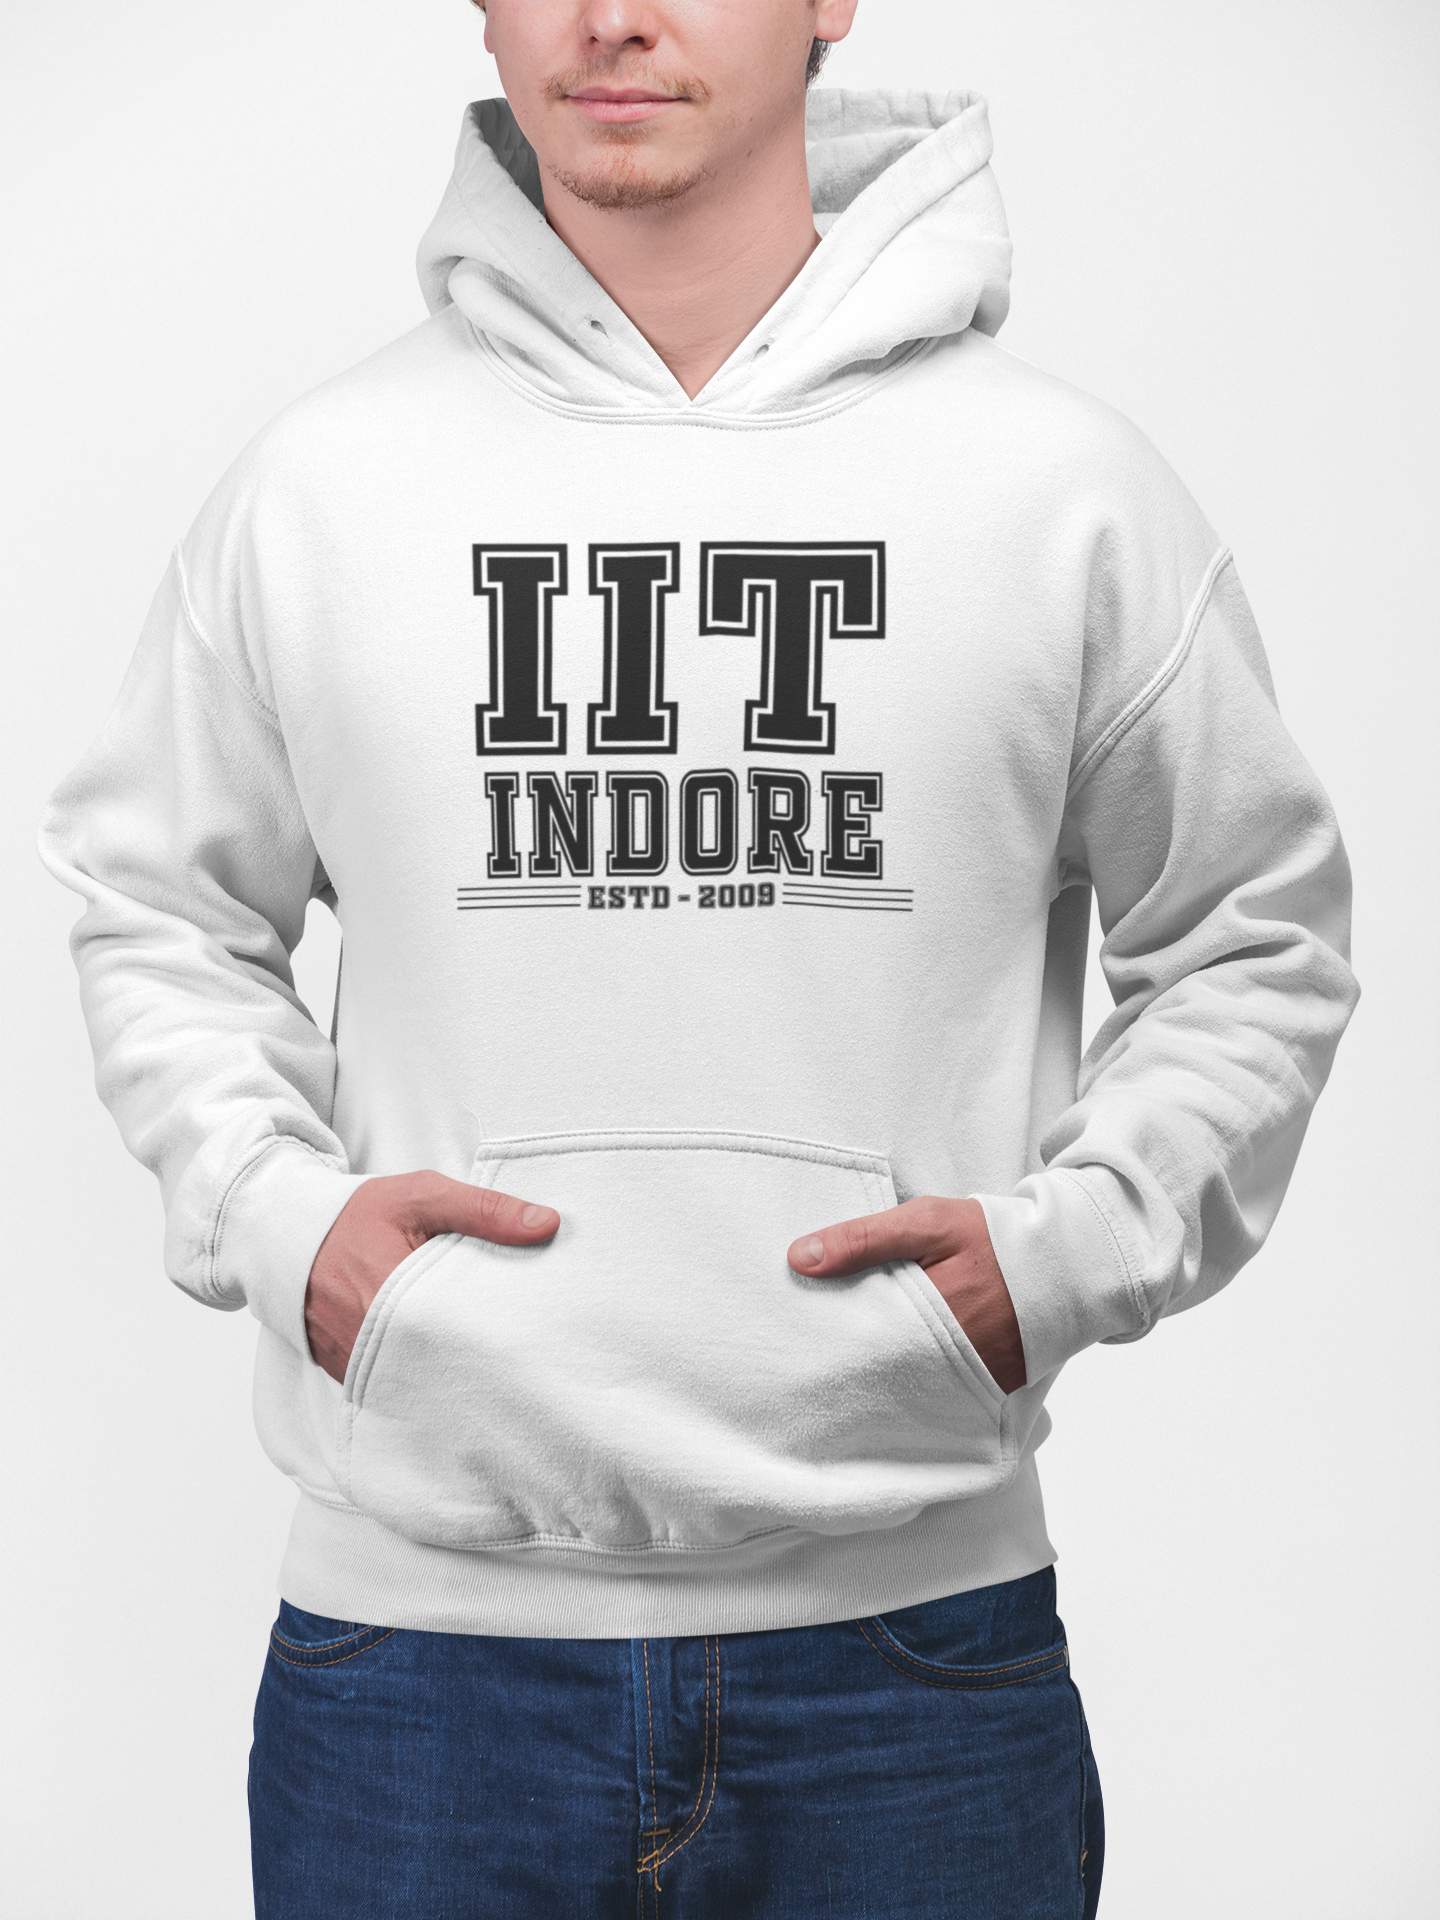 IIT Indore-teeshood.com